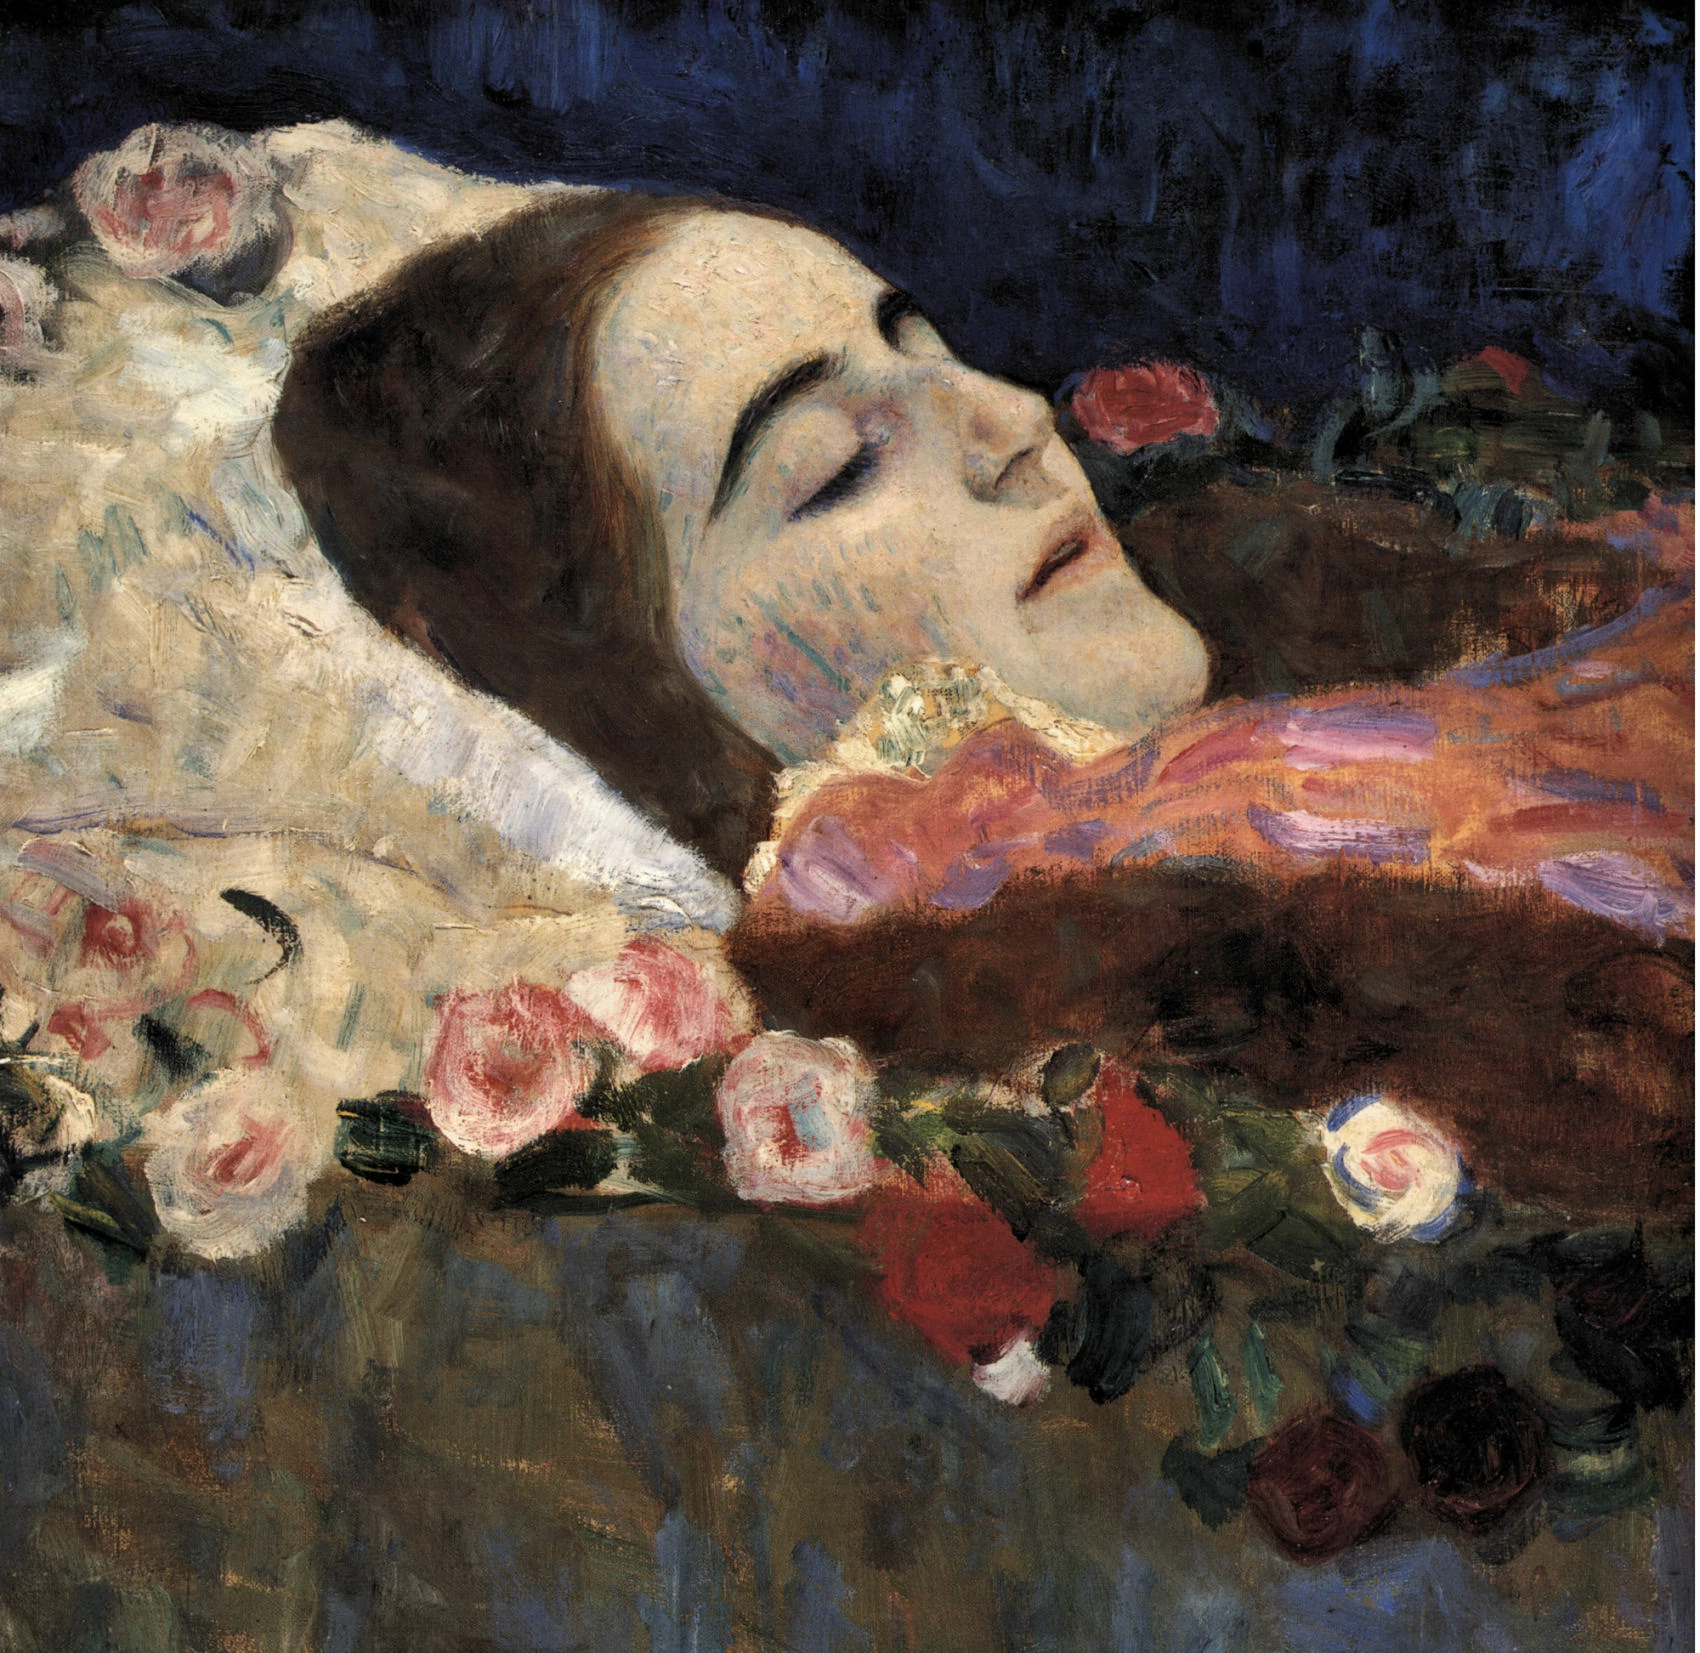 Ria Munk on her Deathbed, Gustav Klimt